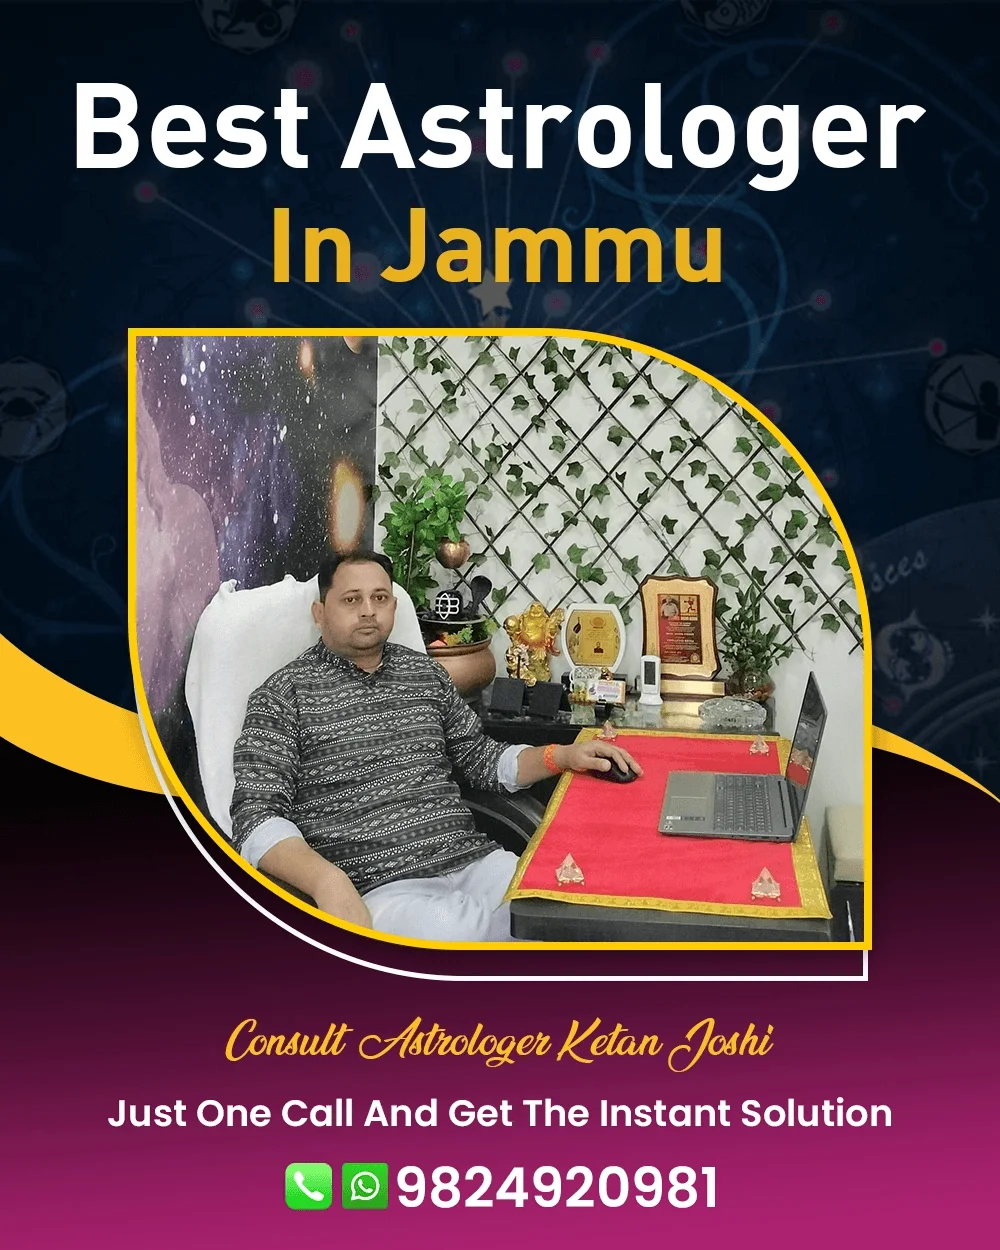 Best Astrologer In Jammu